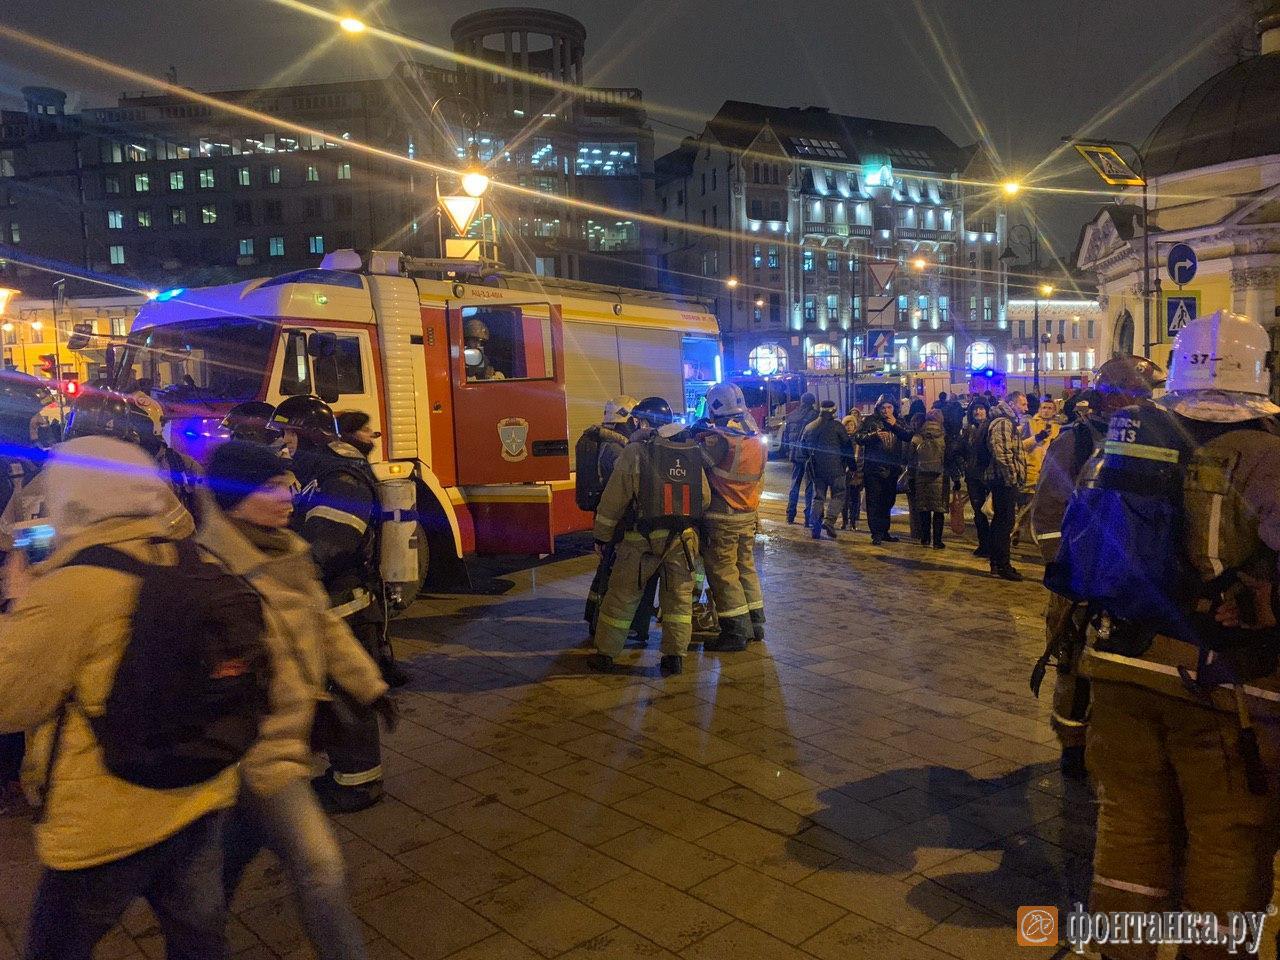 Питер метро что произошло сегодня. Авария в метро Санкт Петербург теракт. Происшествие в метро СПБ. Взрыв в Санкт-Петербурге сейчас.